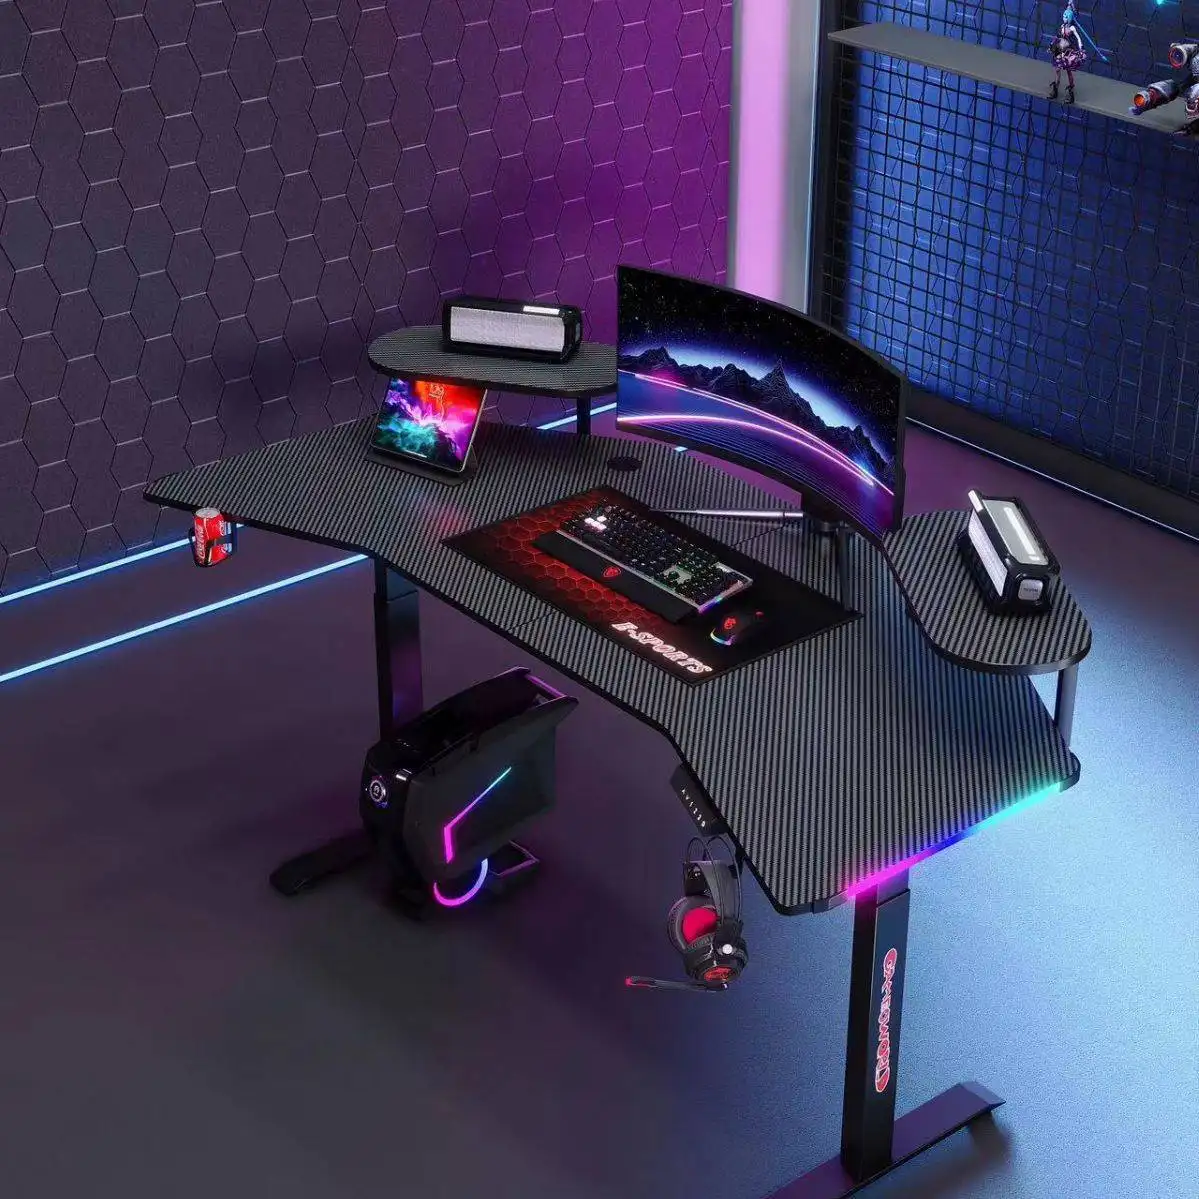 โต๊ะคอมพิวเตอร์คอนโซลศึกษาตารางโต๊ะเขียนไม้กรอบโลหะเดสก์ท็อป PC บ้านเฟอร์นิเจอร์เล่นเกม